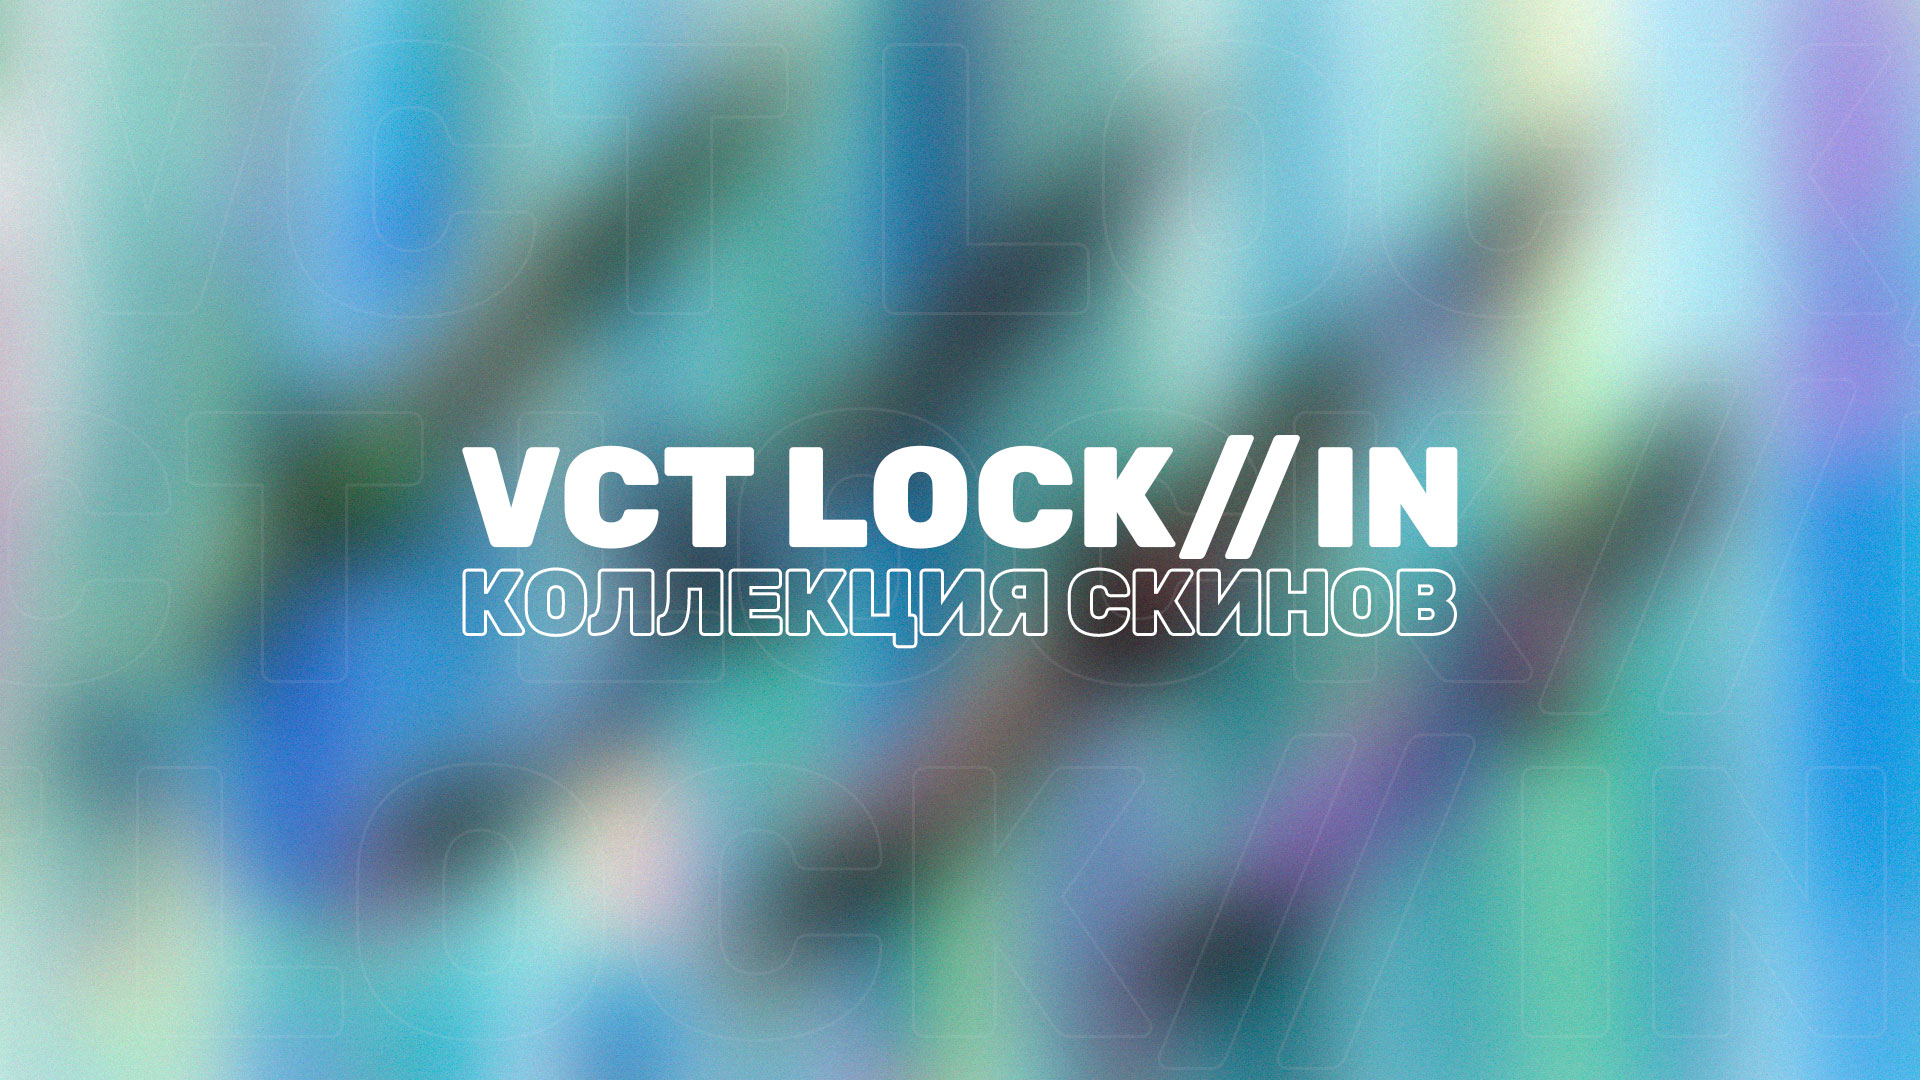 Разработчики Valorant представили новую коллекция скинов VCT LOCK//IN, посвященную одноименному турниру.